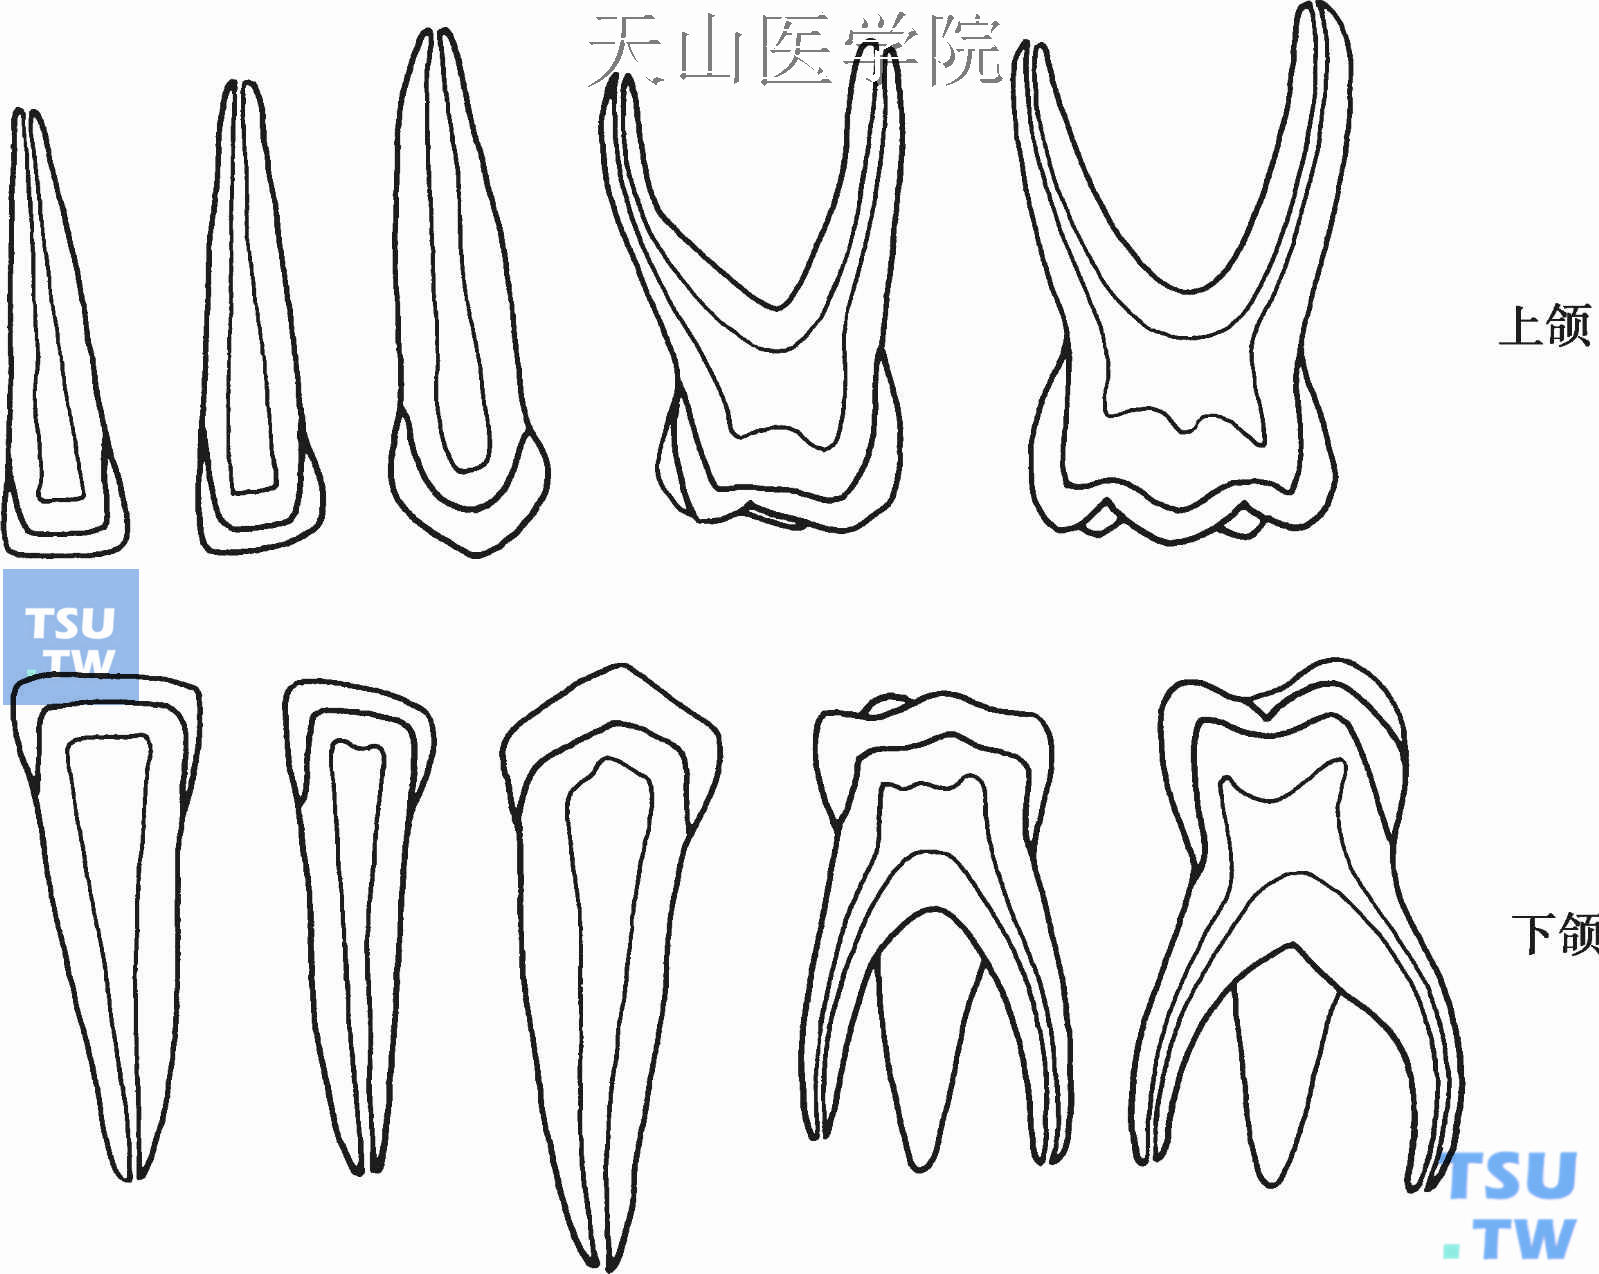 牙髓腔解剖:前牙,磨牙,乳牙髓腔